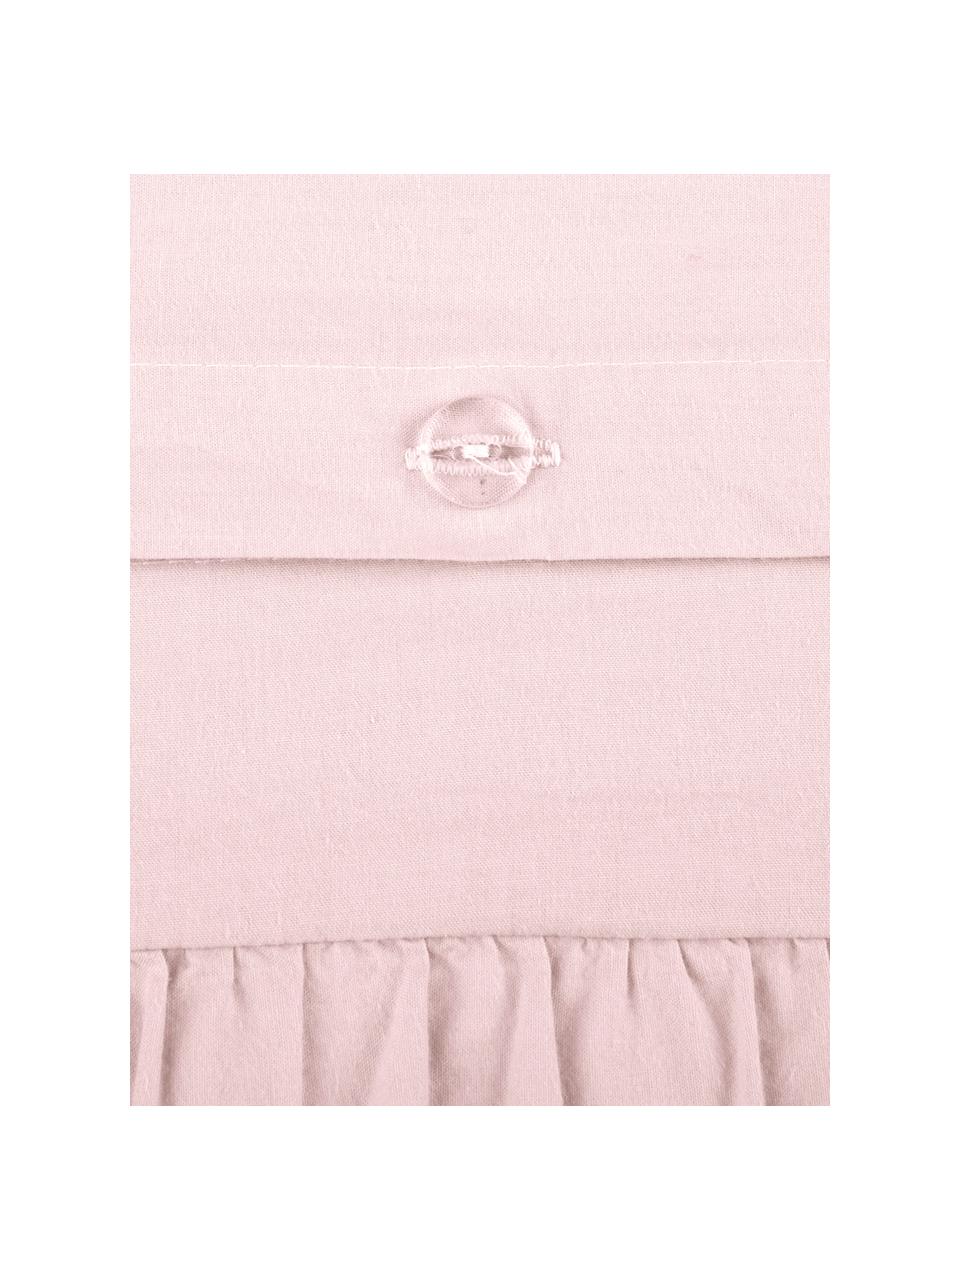 Pościel z bawełny z efektem sprania i falbankami Florence, Blady różowy, 240 x 220 cm + 2 poduszki 80 x 80 cm